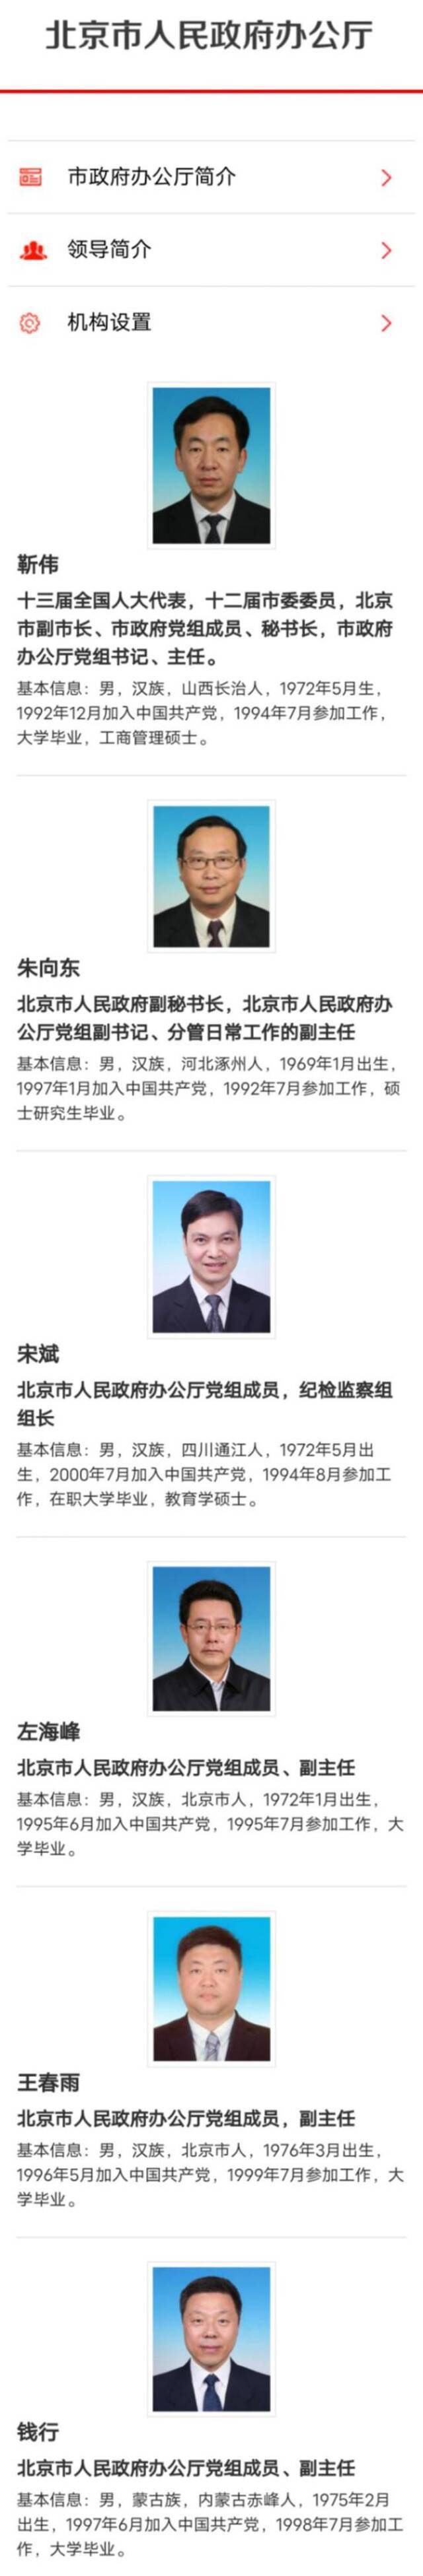 王芳不再担任北京市人民政府副秘书长